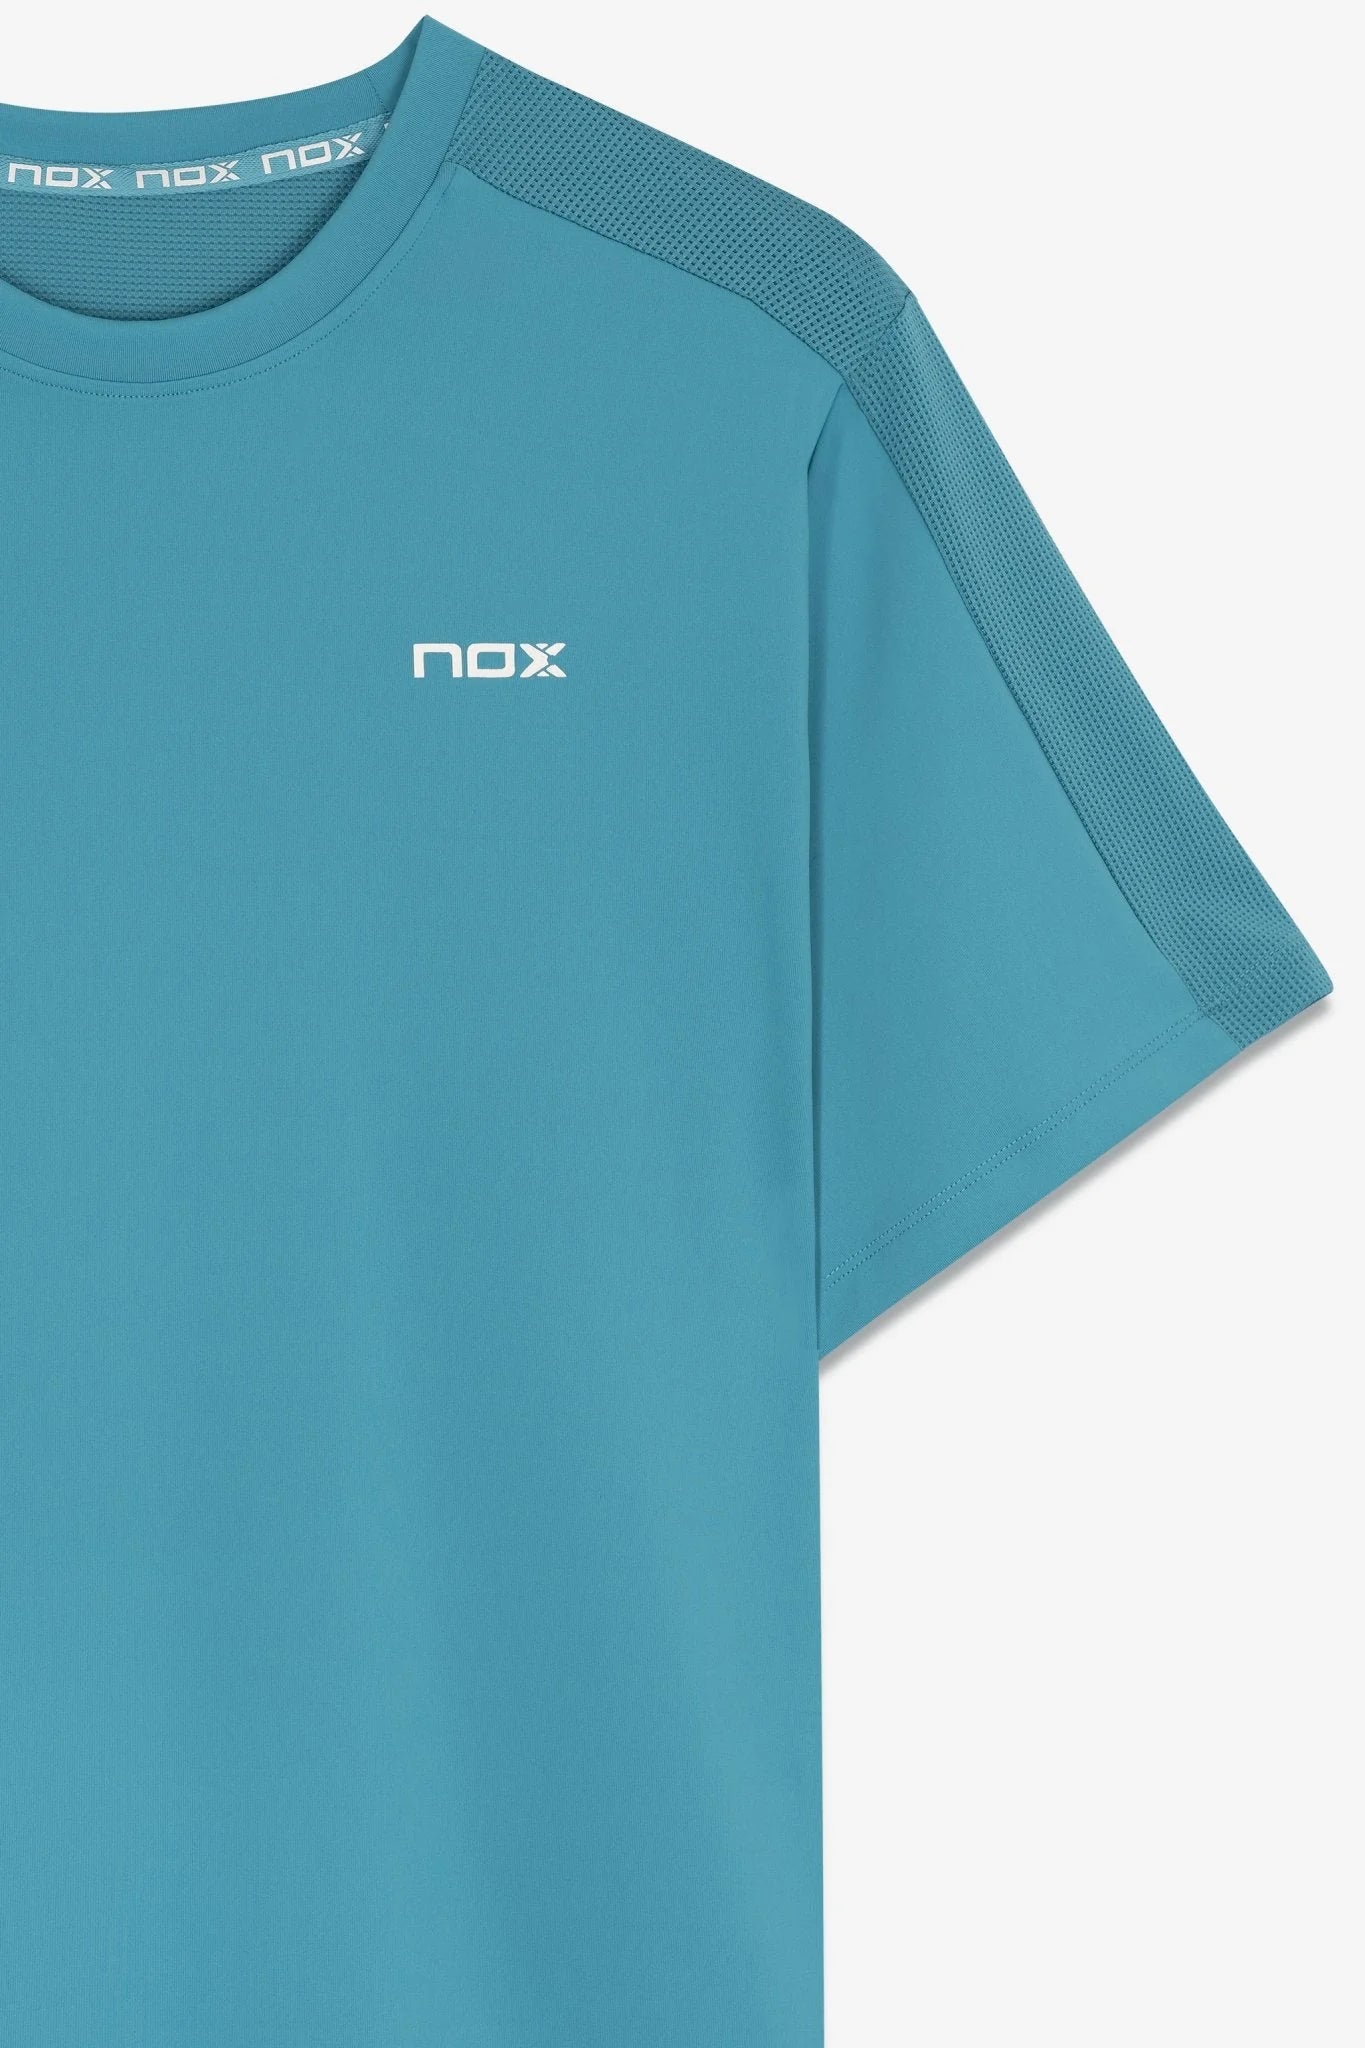 Camiseta Manga Corta Nox Pro Regular Capri 8